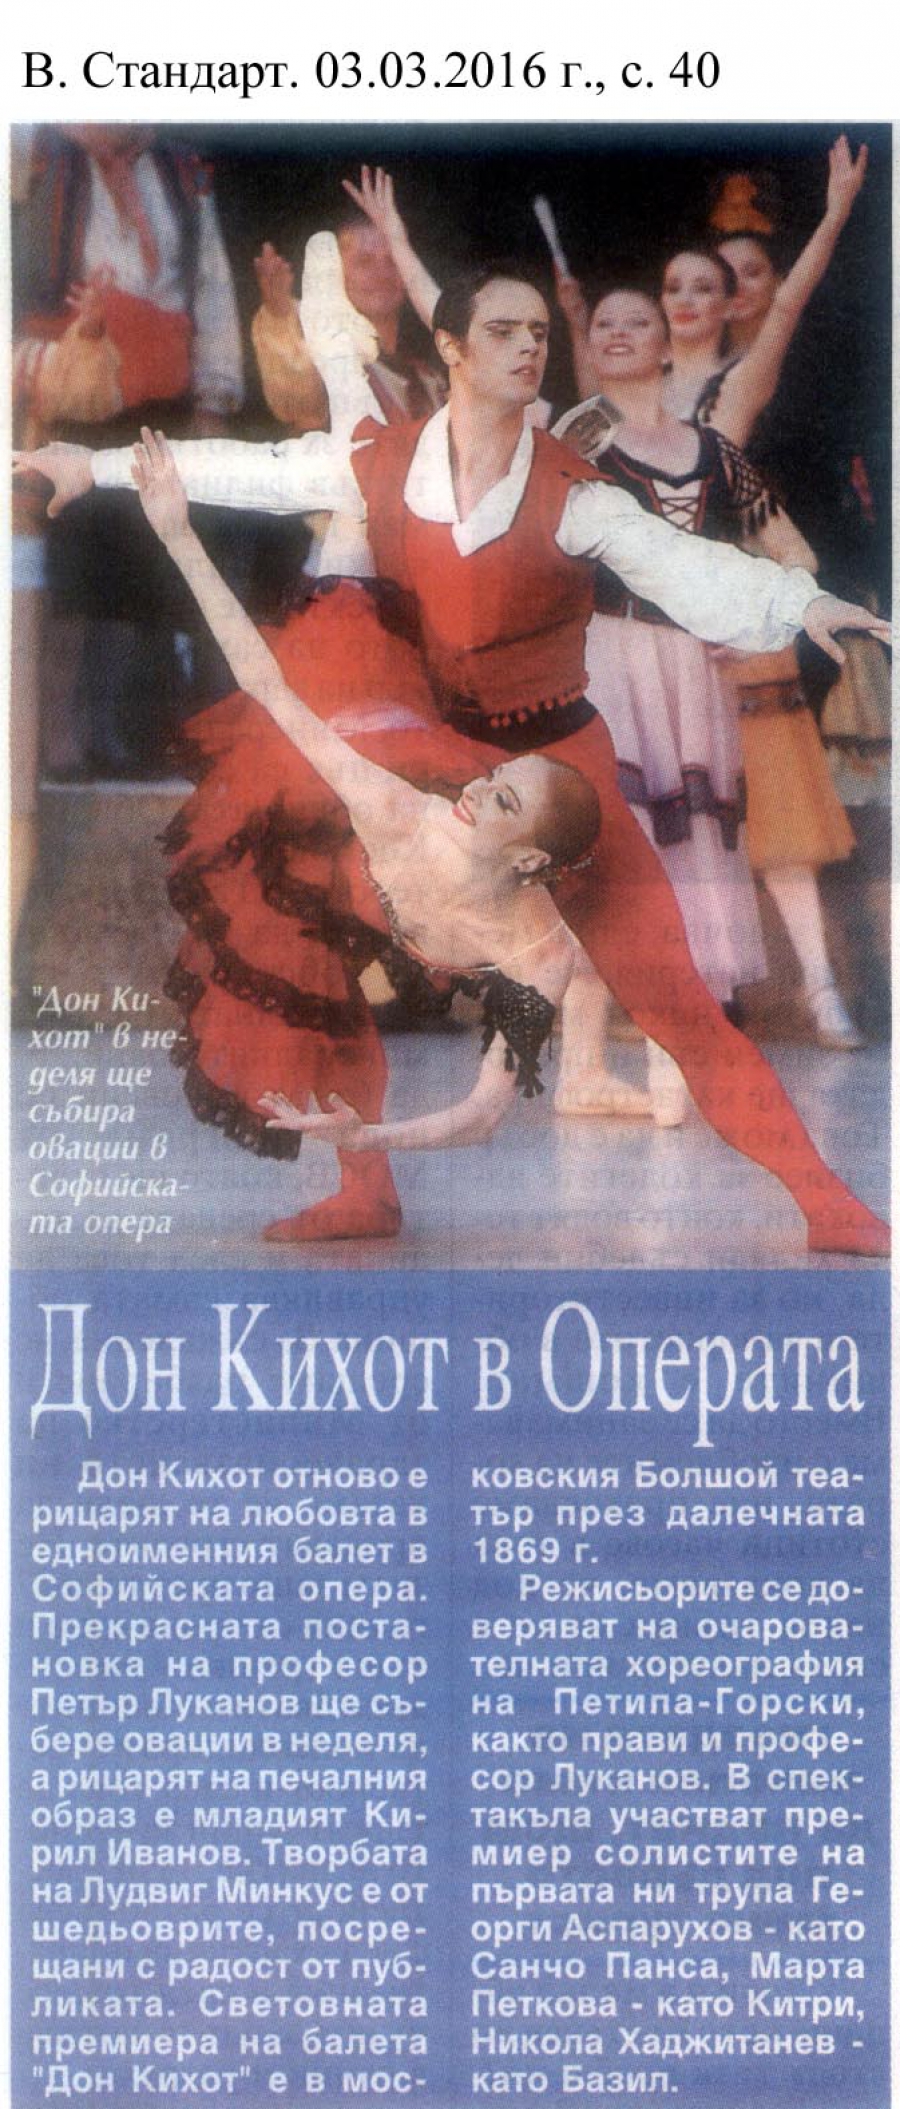 "Дон Кихот" в Операта - в.Стандарт